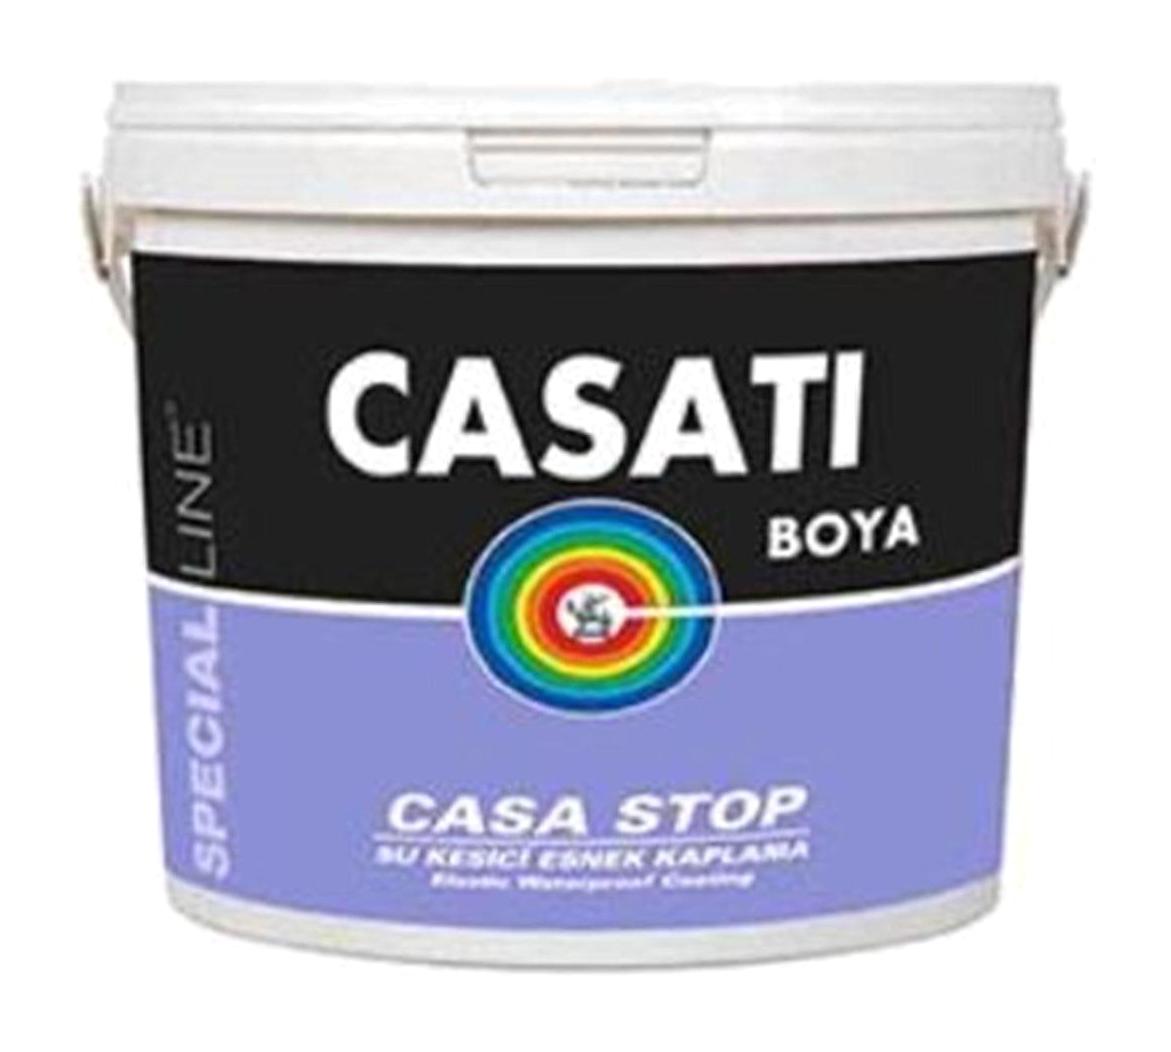 Casati Casa Stop Su Bazlı Dış Cephe Boyası 1 kg Beyaz